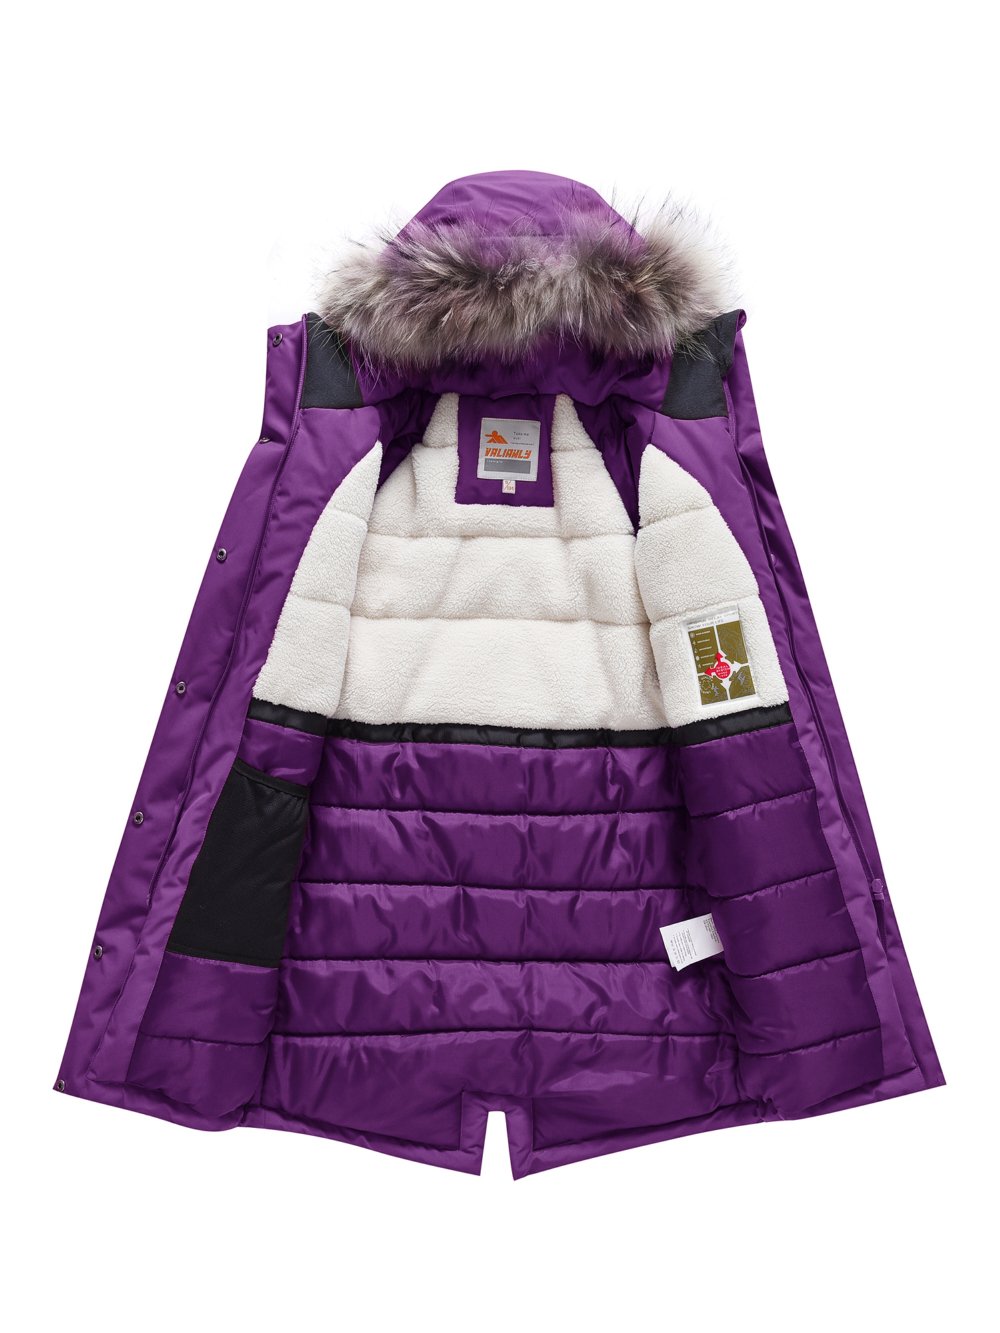 Купить куртку парку для девочки оптом от производителя недорого в Москве 9340F 1